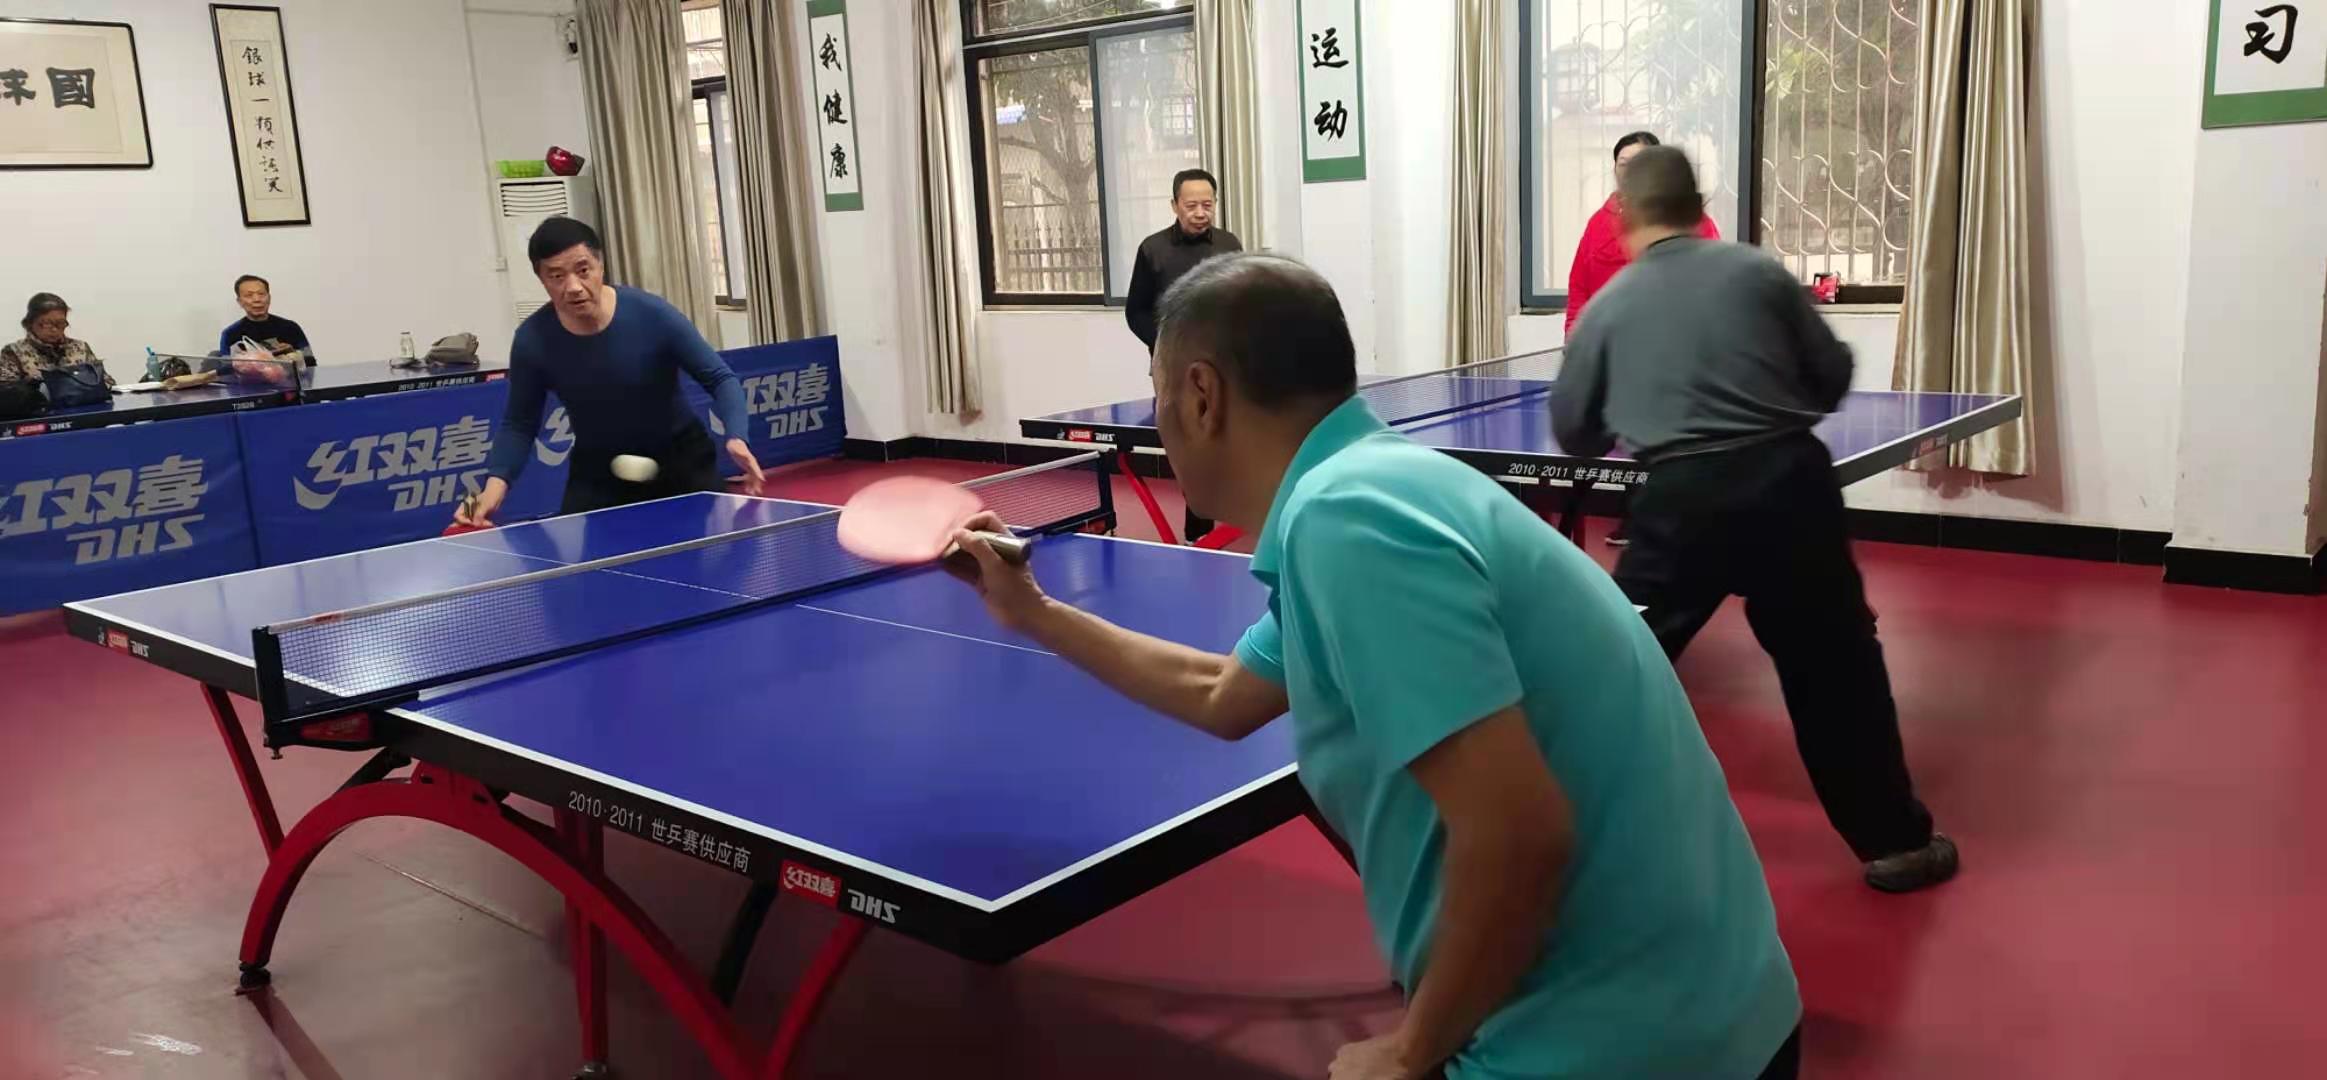 美高梅游戏官网娱乐举办老年乒乓球男子单打友谊赛